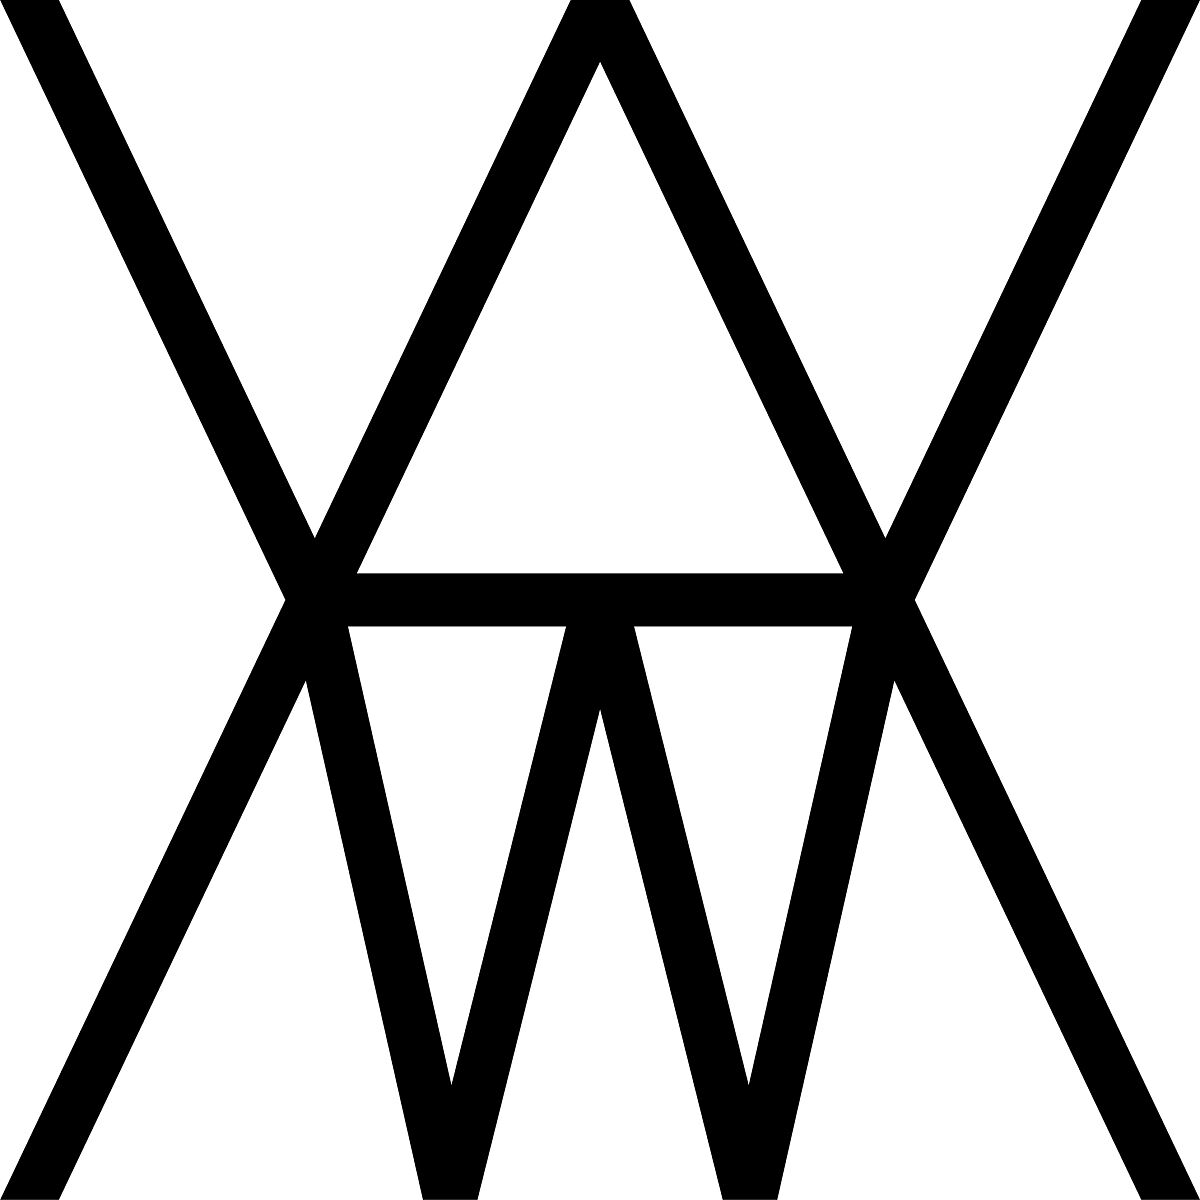 Logo WELTWIEN